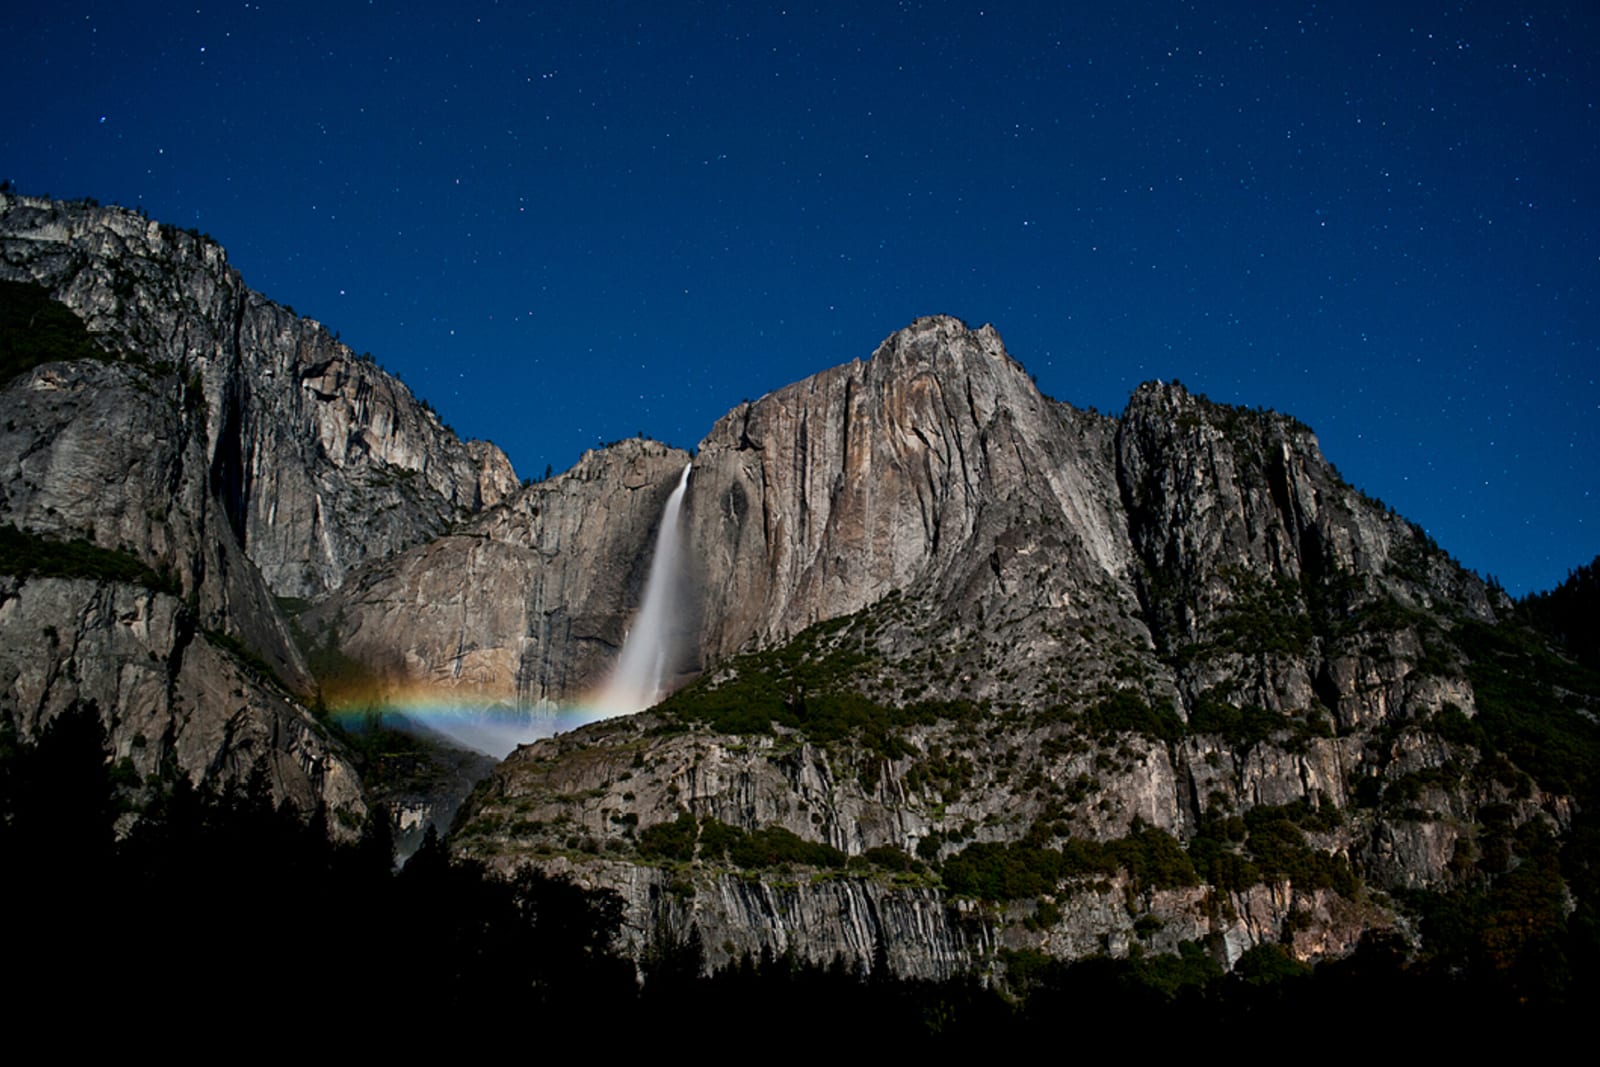 A moonbow at Yosemite Falls